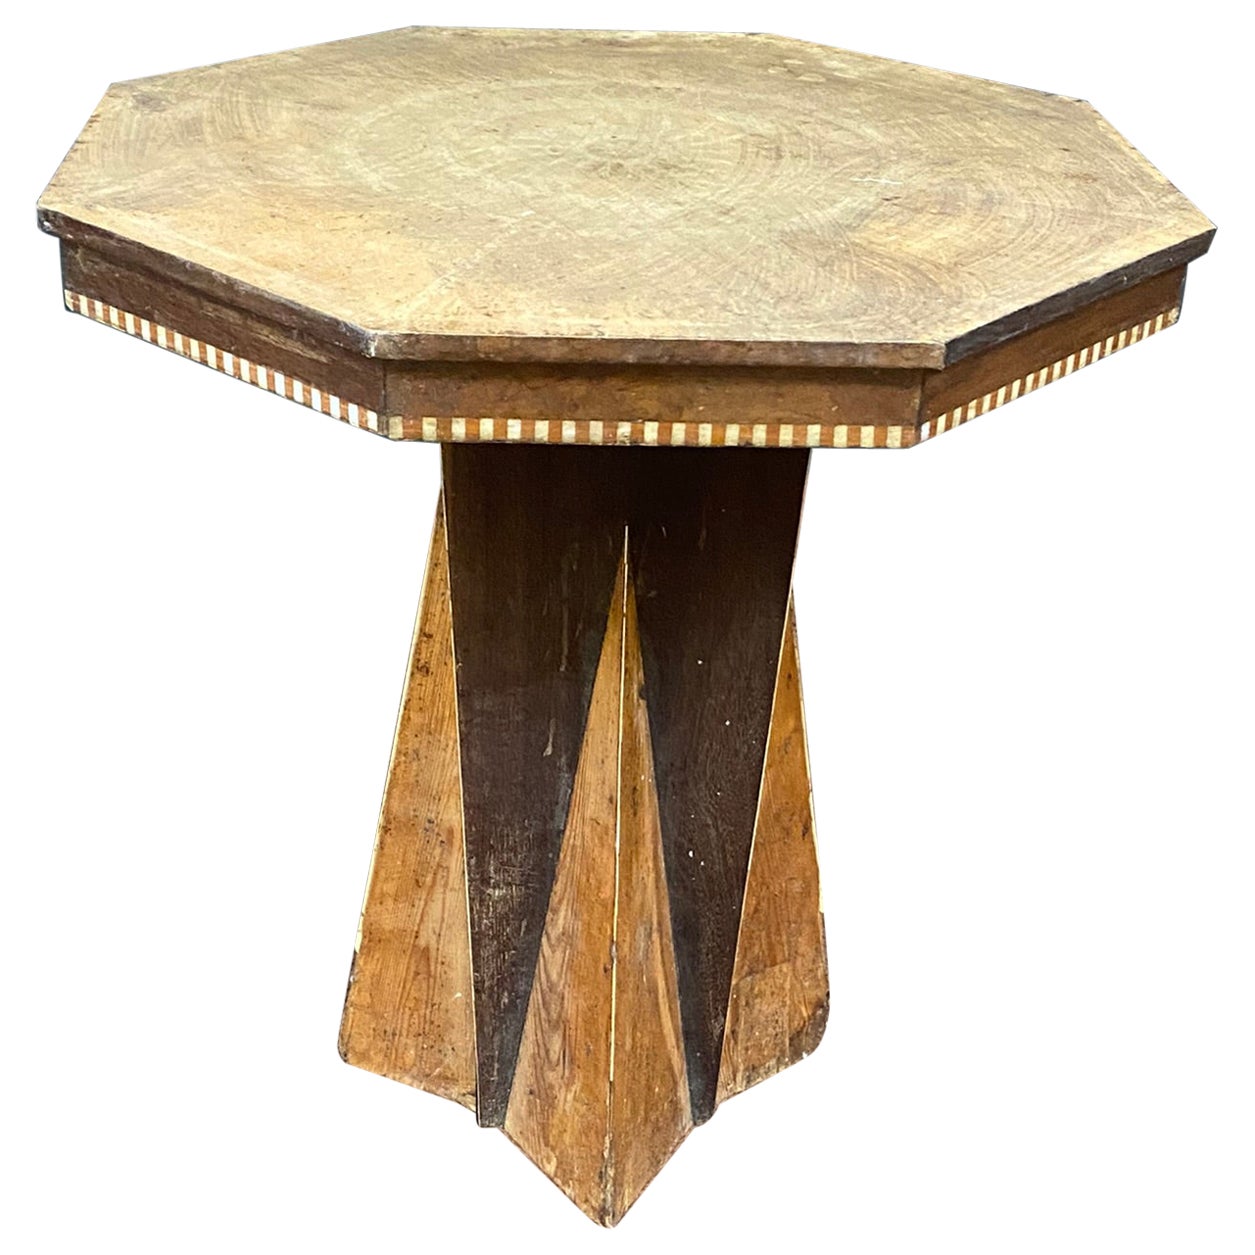 Interesante mesa africanista de pedestal Art Decó, hacia 1930